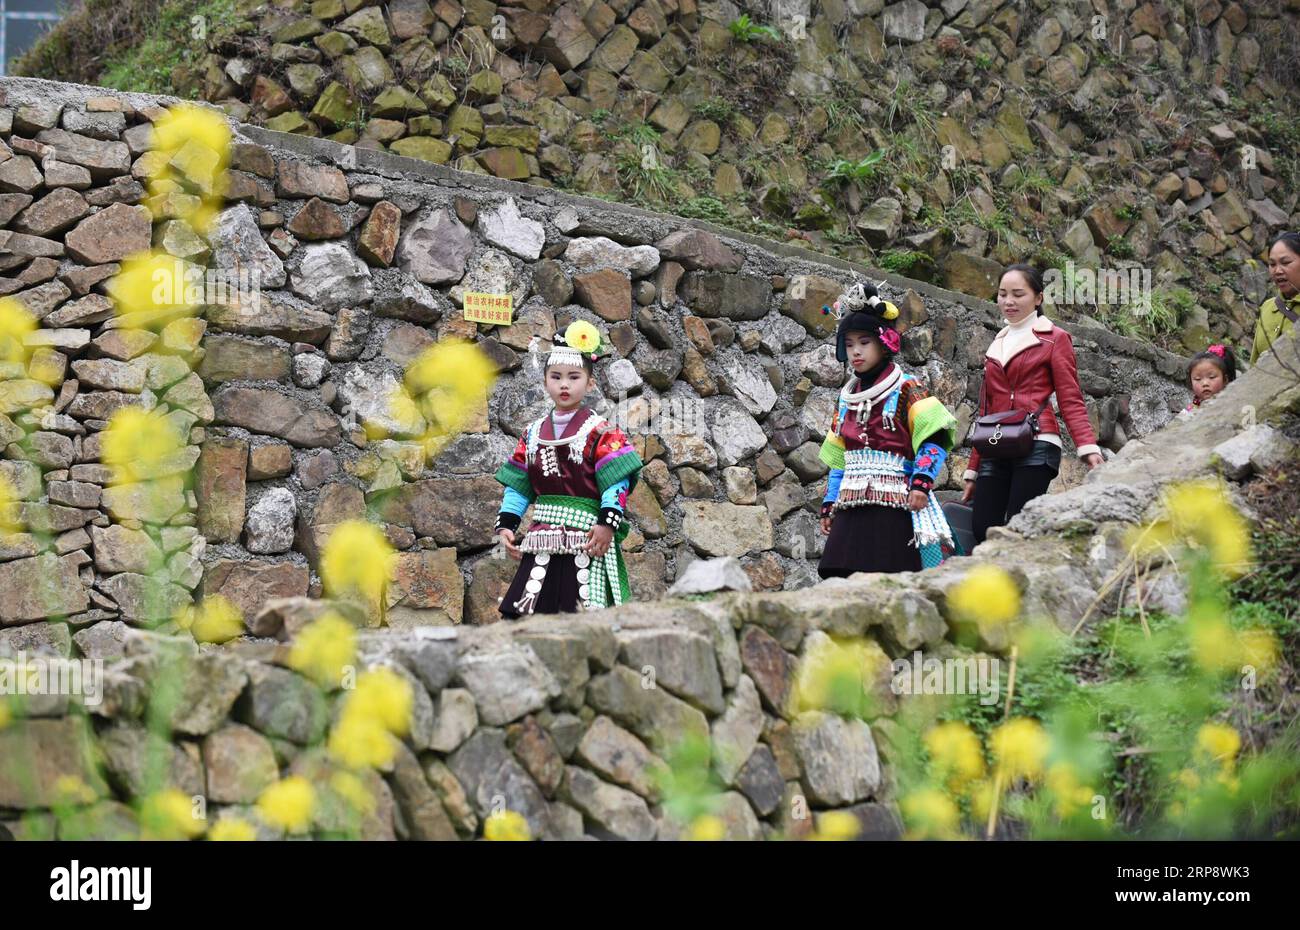 (190316) -- DANZHAI, 16 marzo 2019 (Xinhua) -- ragazze del gruppo etnico Miao capo per la celebrazione annuale del Fangu Drumming Festival, al villaggio di Qingjiang, nella contea di Danzhai, nella provincia di Guizhou della Cina sud-occidentale, 16 marzo 2019. Il Fangu Drumming Festival, un tradizionale festival locale con una storia di quasi 600 anni, offre balli con tamburi di legno, combattimento con tori, canti d'amore antifonali e altre forme d'arte popolare tradizionali. (Xinhua/Yang Wenbin) CHINA-GUIZHOU-ETNICO MIAO-FANGU FESTIVAL-DUMMING CELEBRATION(CN) PUBLICATIONxNOTxINxCHN Foto Stock